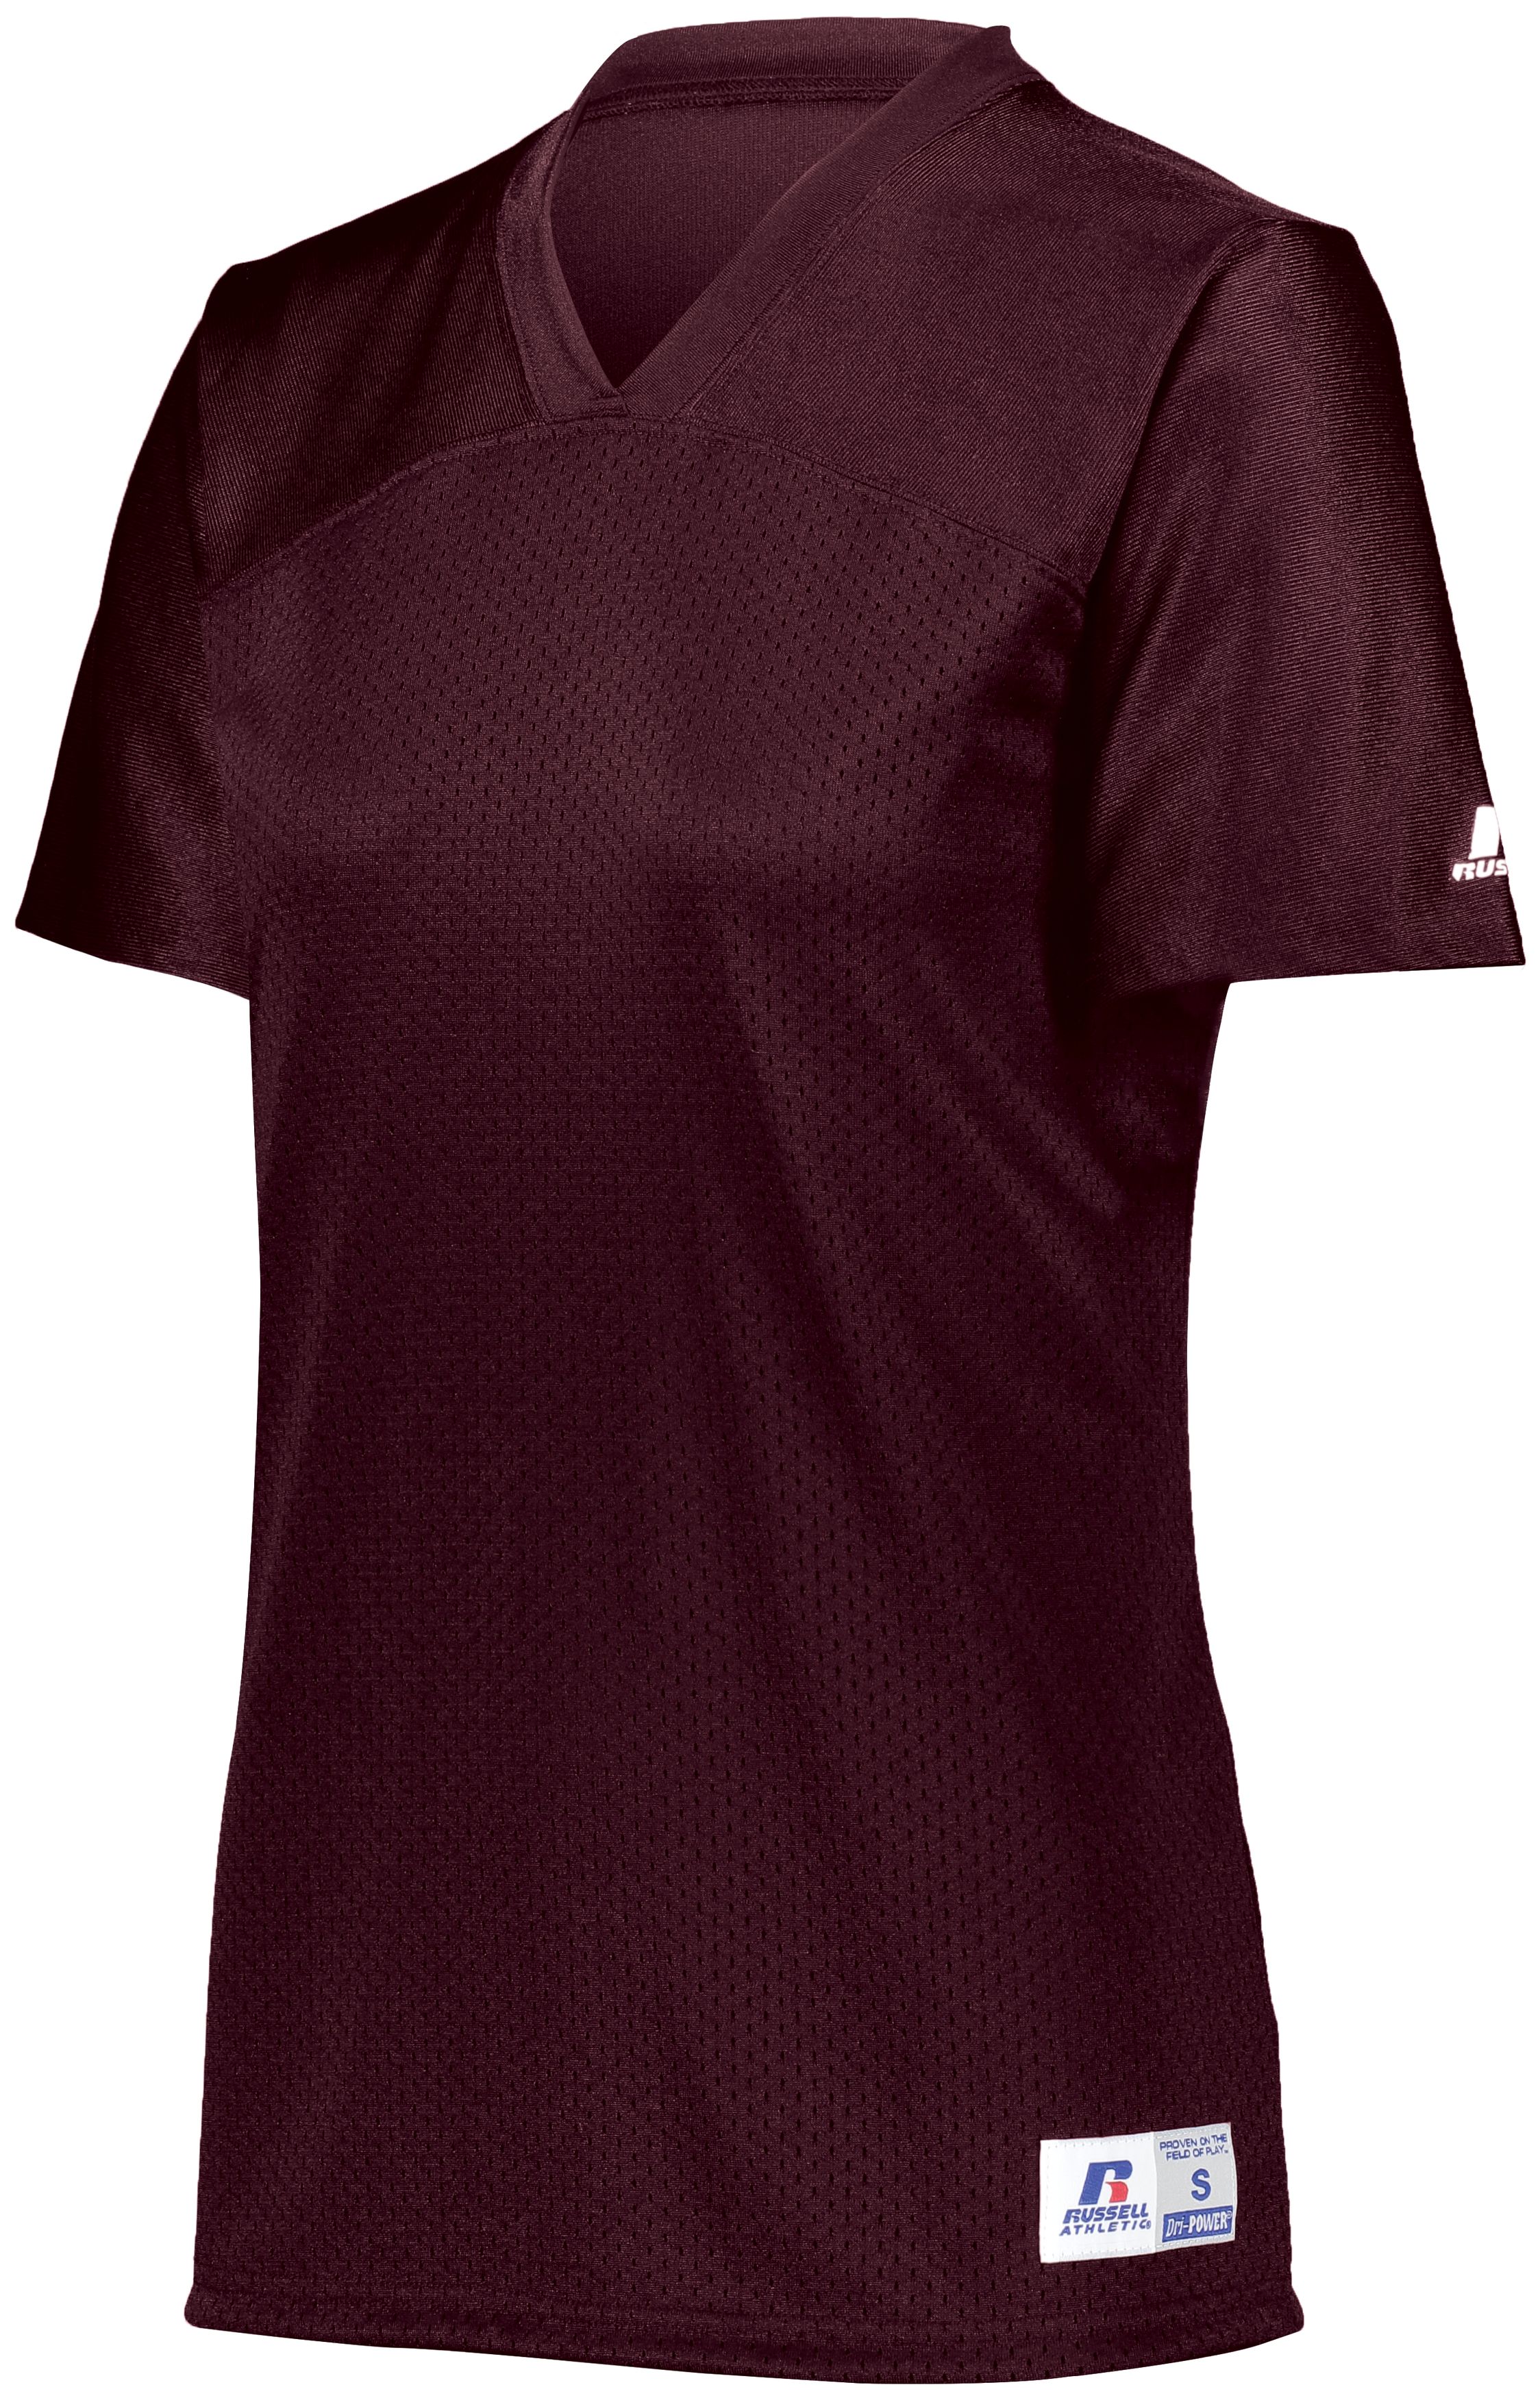 Augusta Sportswear; Women's Replica Football Jersey